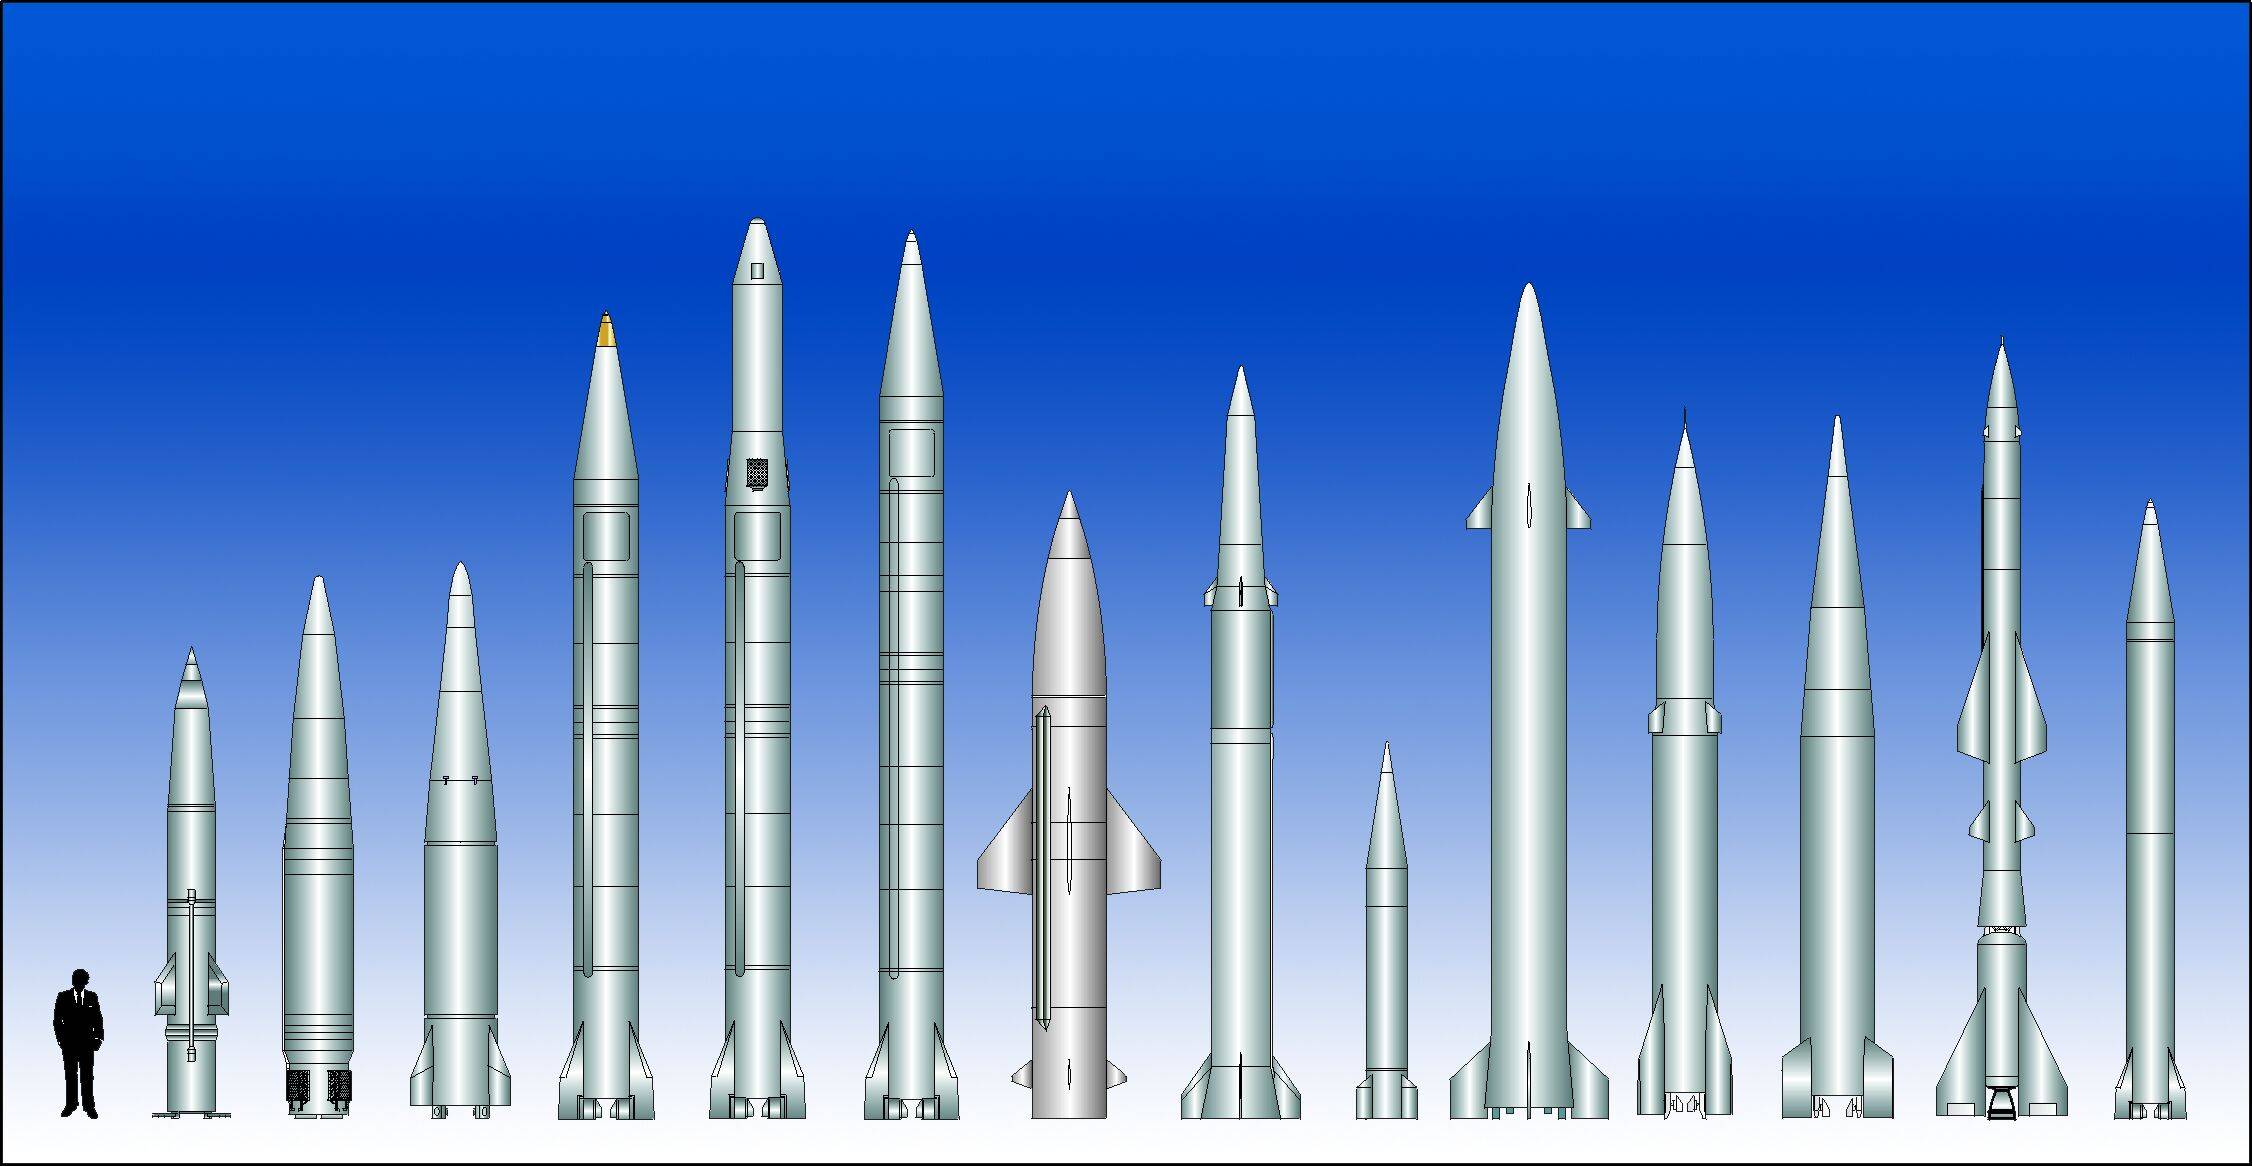 Баллистические и крылатые ракеты россии | техкульт